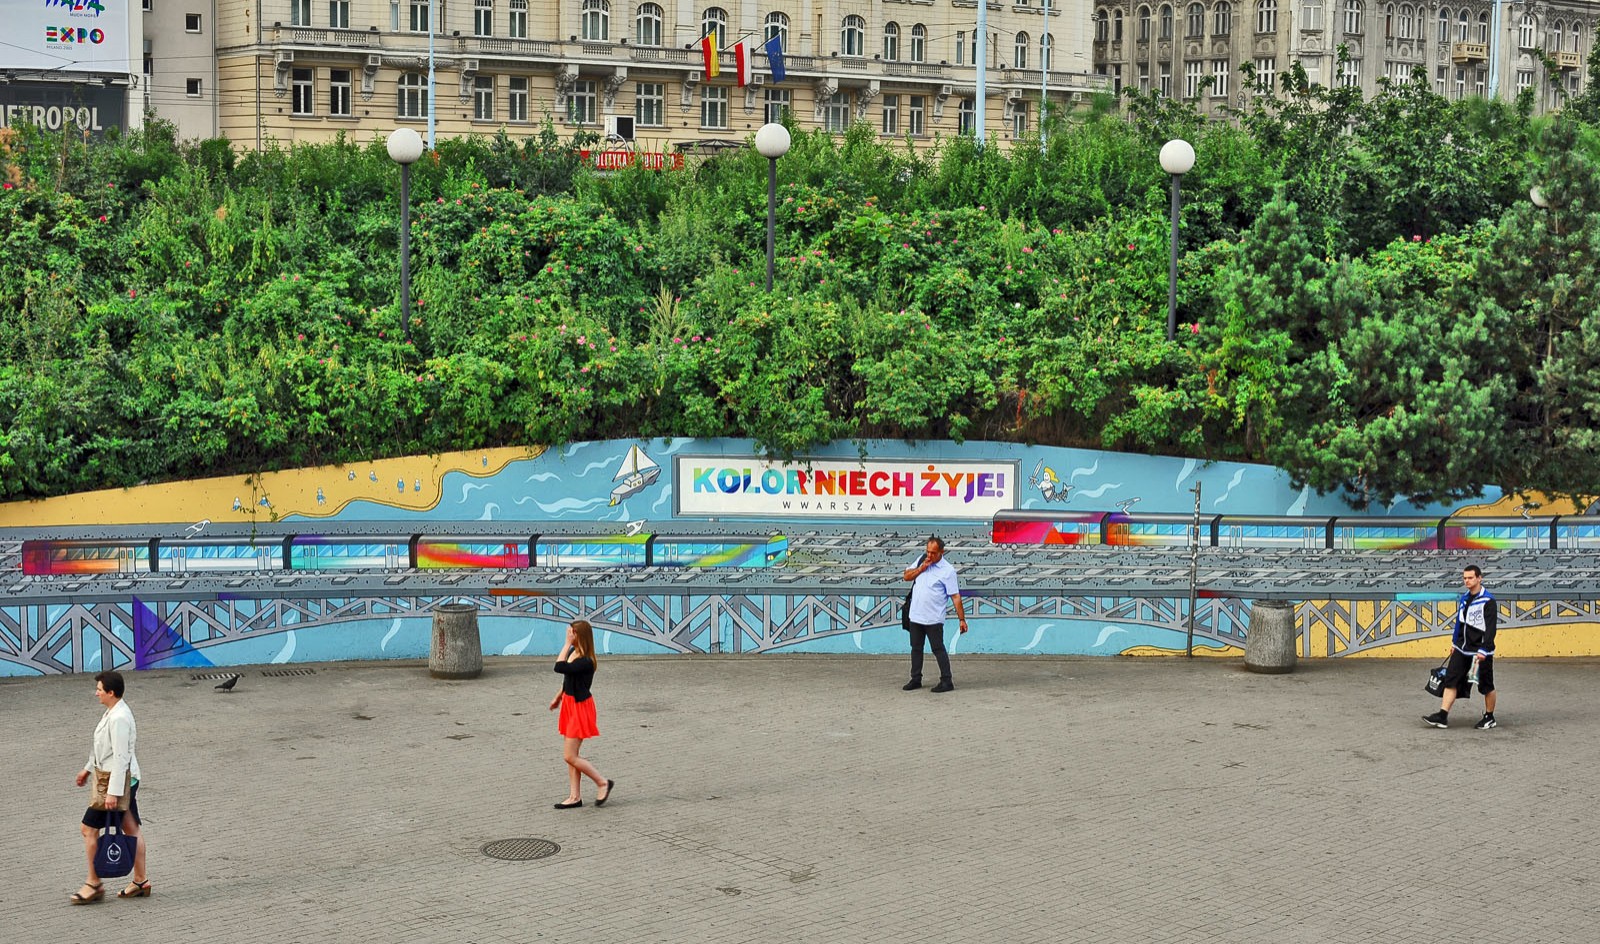 Patelnia metro centrum w Warszawie Samsung mural reklamowy Kolor niech żyje | Mural na warszawskiej patelni - Kolor niech żyje! | Portfolio